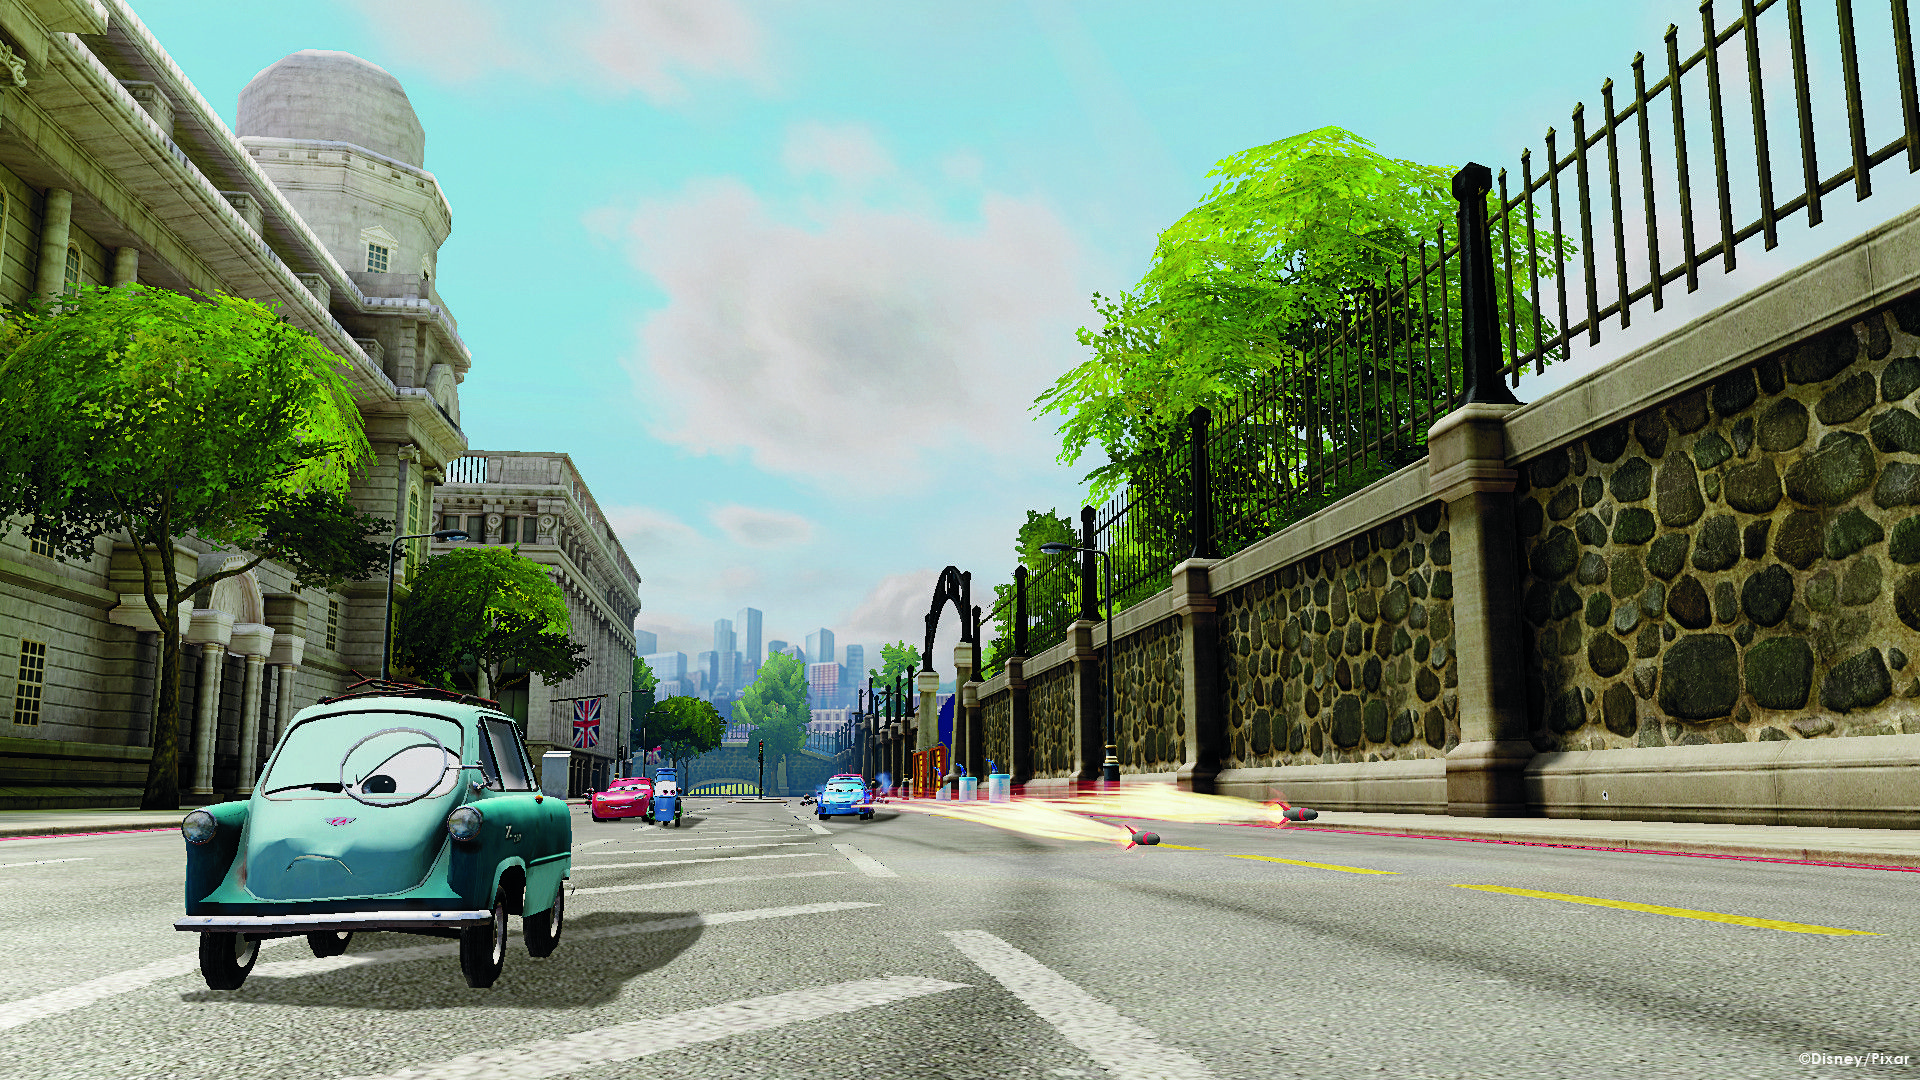 download free disney pixar cars 2 game